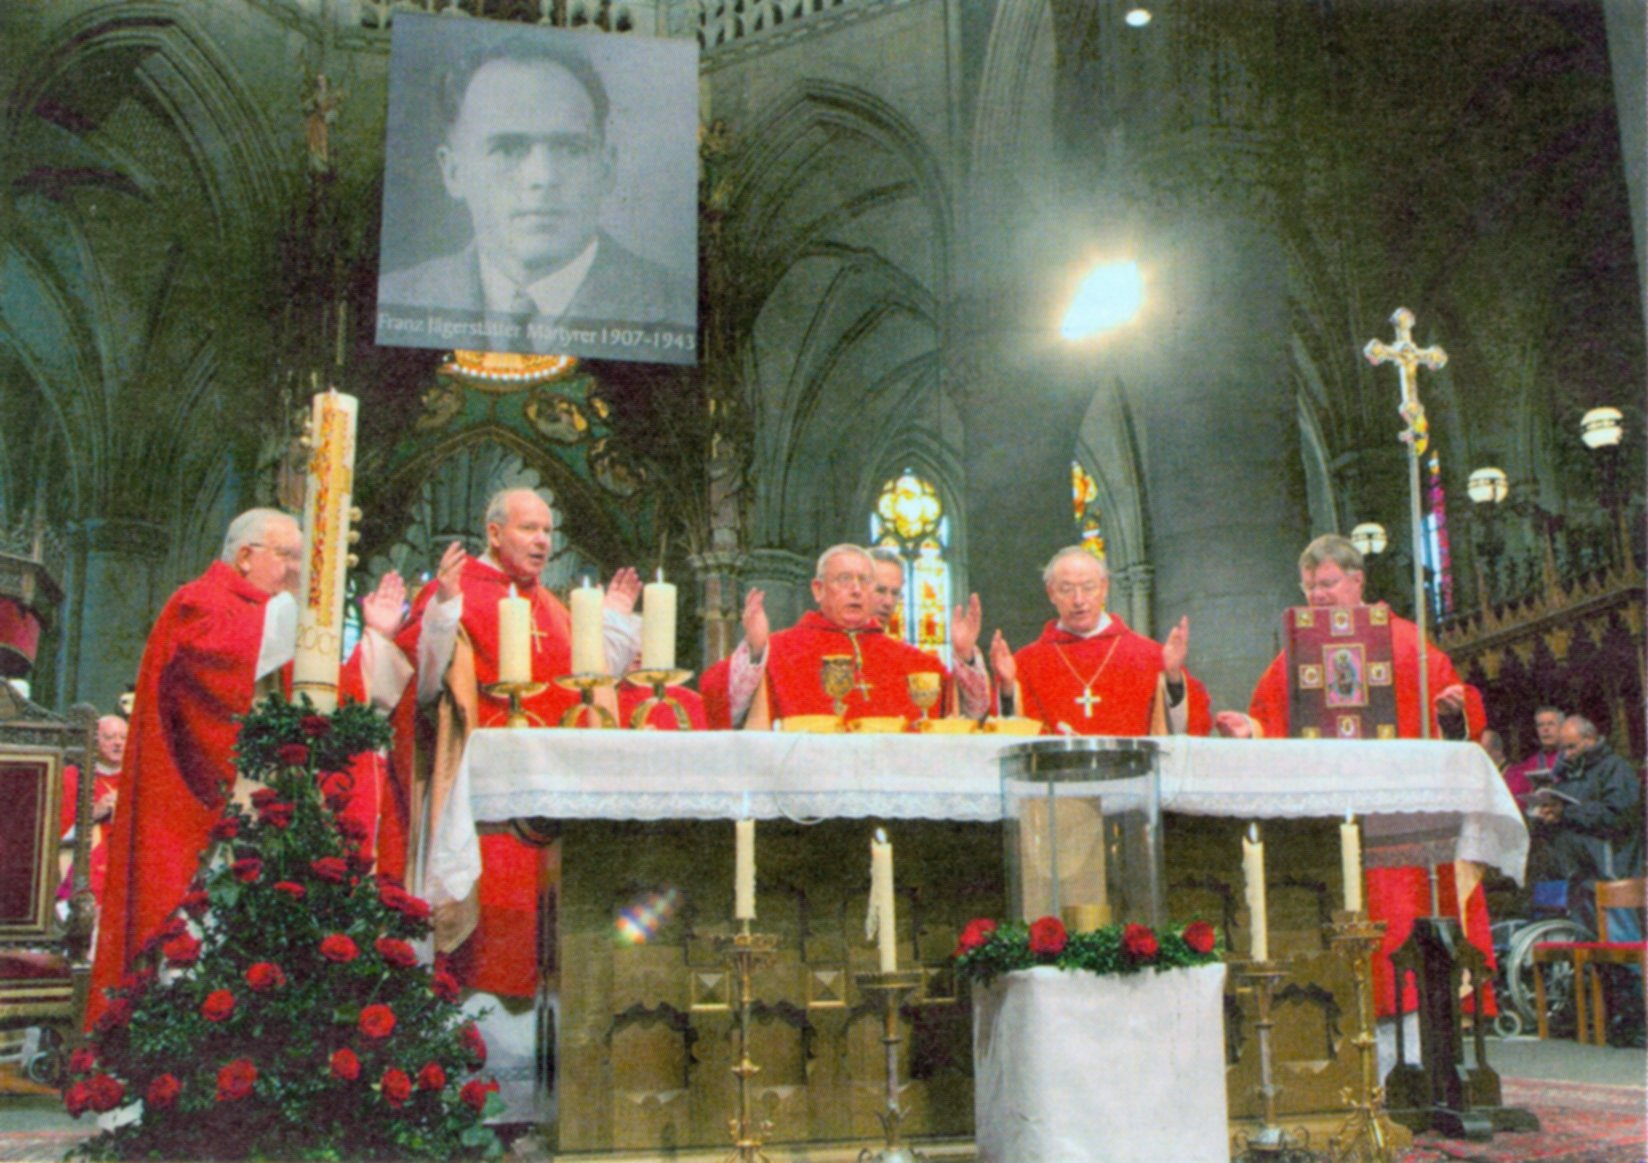 Messe zur Seligsprechung von Franz Jägerstätter im Dom in Linz 2007